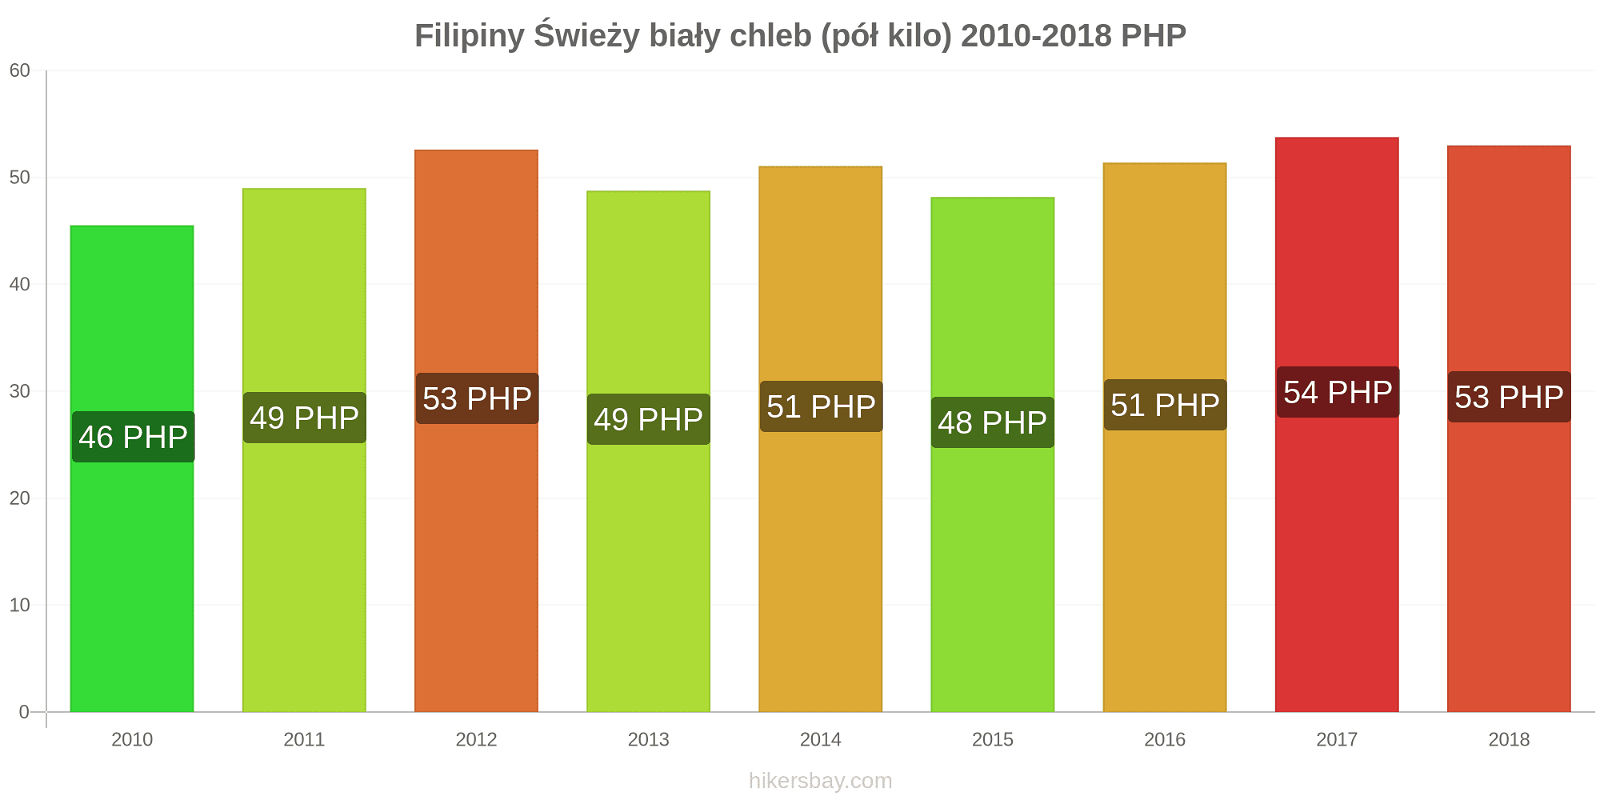 Filipiny zmiany cen Chleb pół kilo hikersbay.com